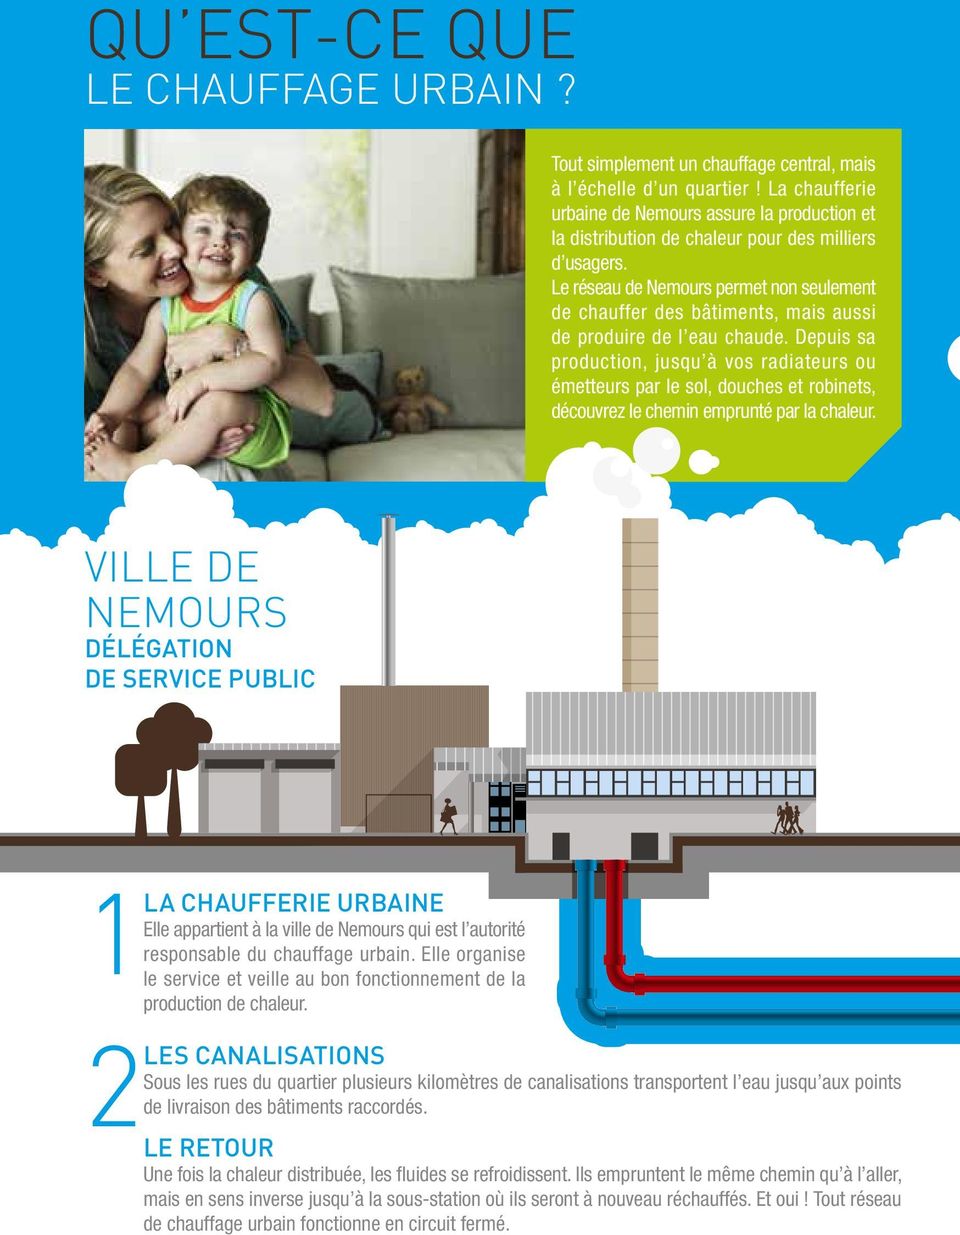 Le réseau de Nemours permet non seulement de chauffer des bâtiments, mais aussi de produire de l eau chaude.